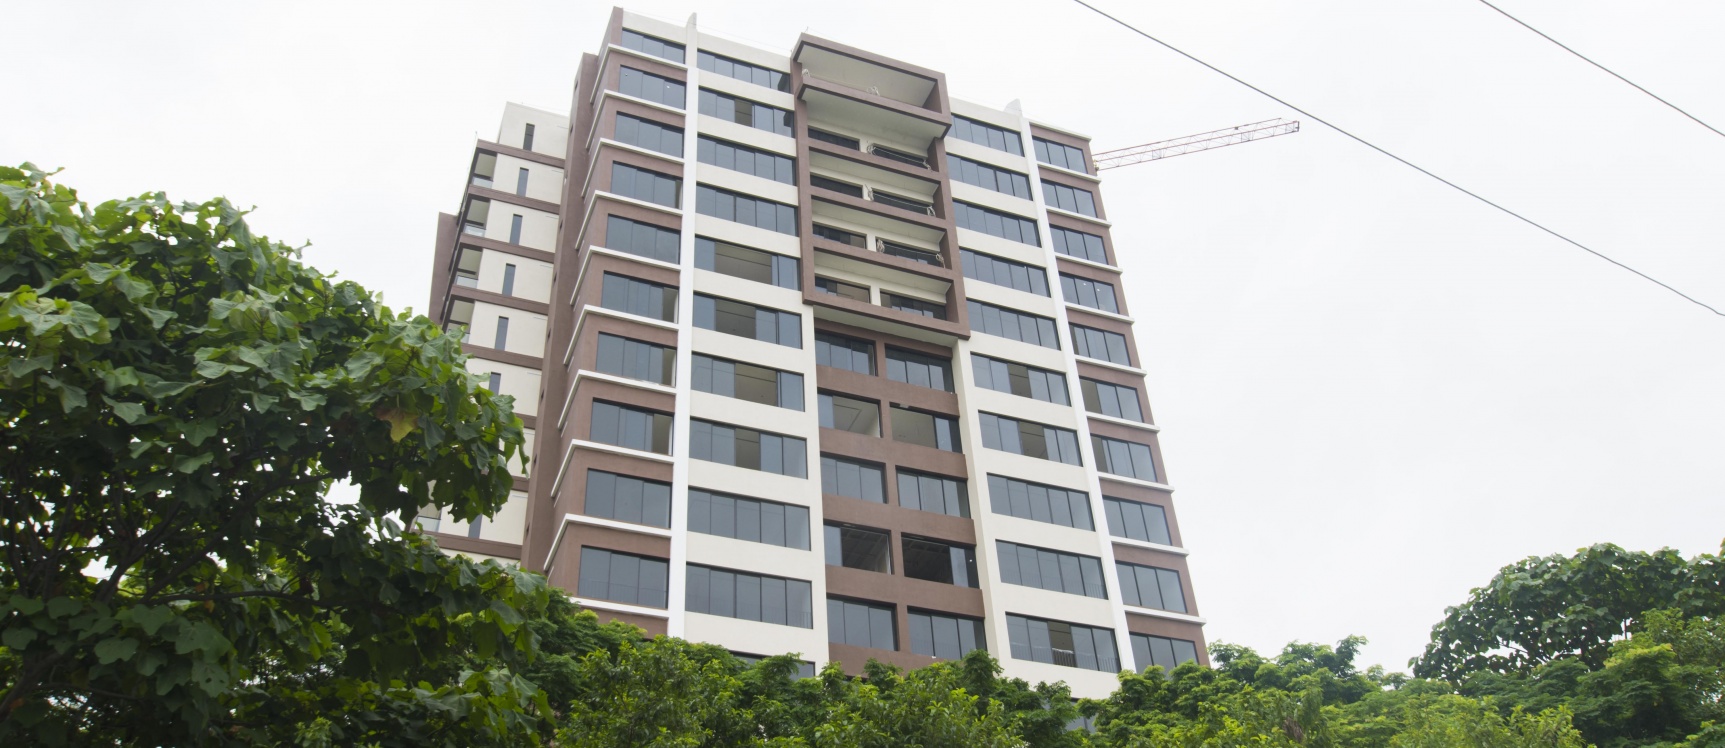 GeoBienes - Departamento de estreno en venta ubicada en la Urbanización Bosques de la Costa - Plusvalia Guayaquil Casas de venta y alquiler Inmobiliaria Ecuador